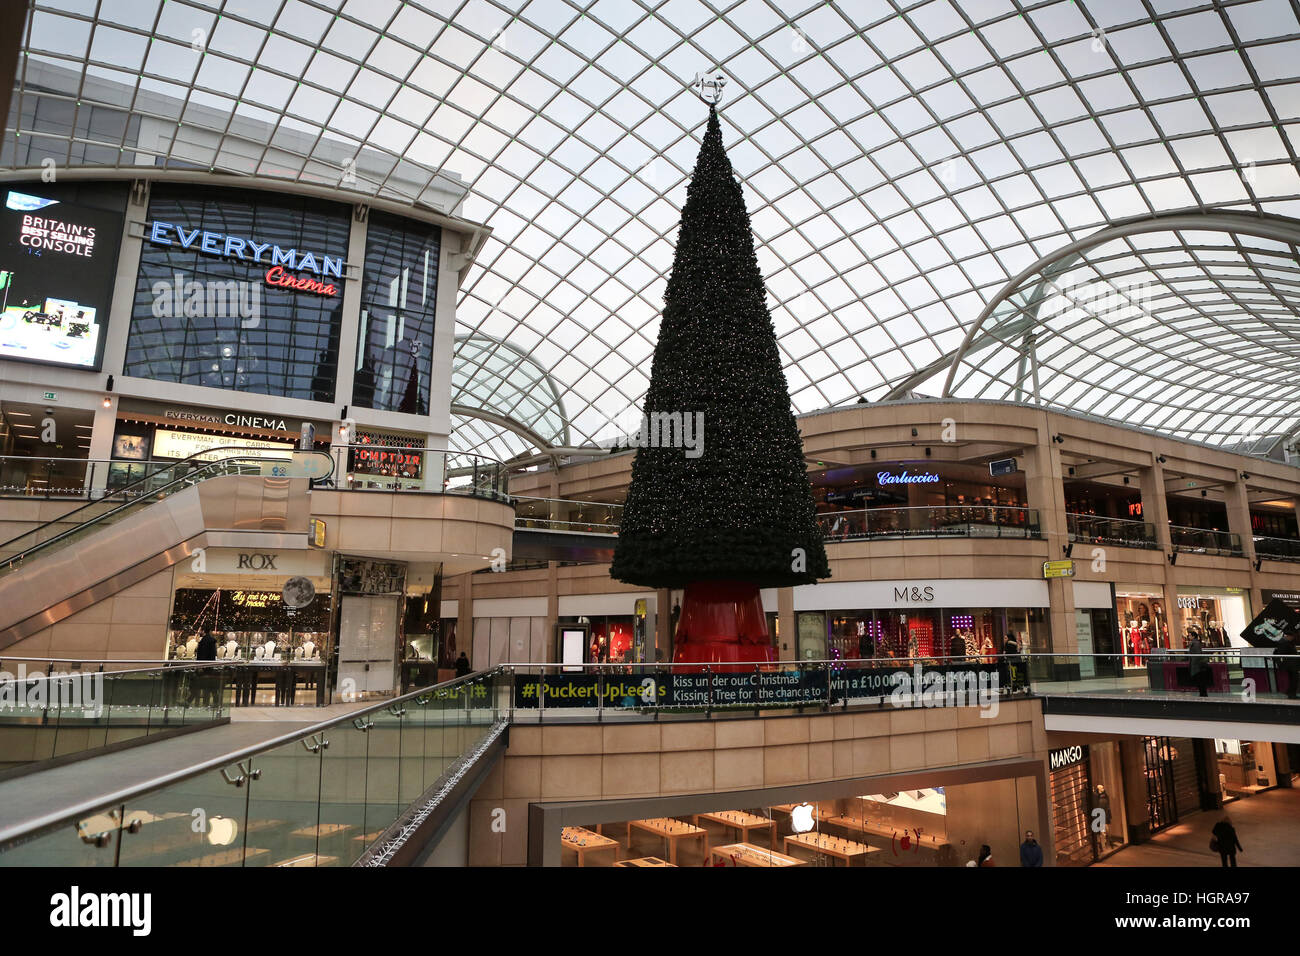 02/12/16, Leeds, Reino Unido. un árbol de navidad y decoraciones festivas que adornan la trinidad centro comercial de Leeds, West Yorkshire. como llega el mes de diciembre en el Reino Unido sh Foto de stock